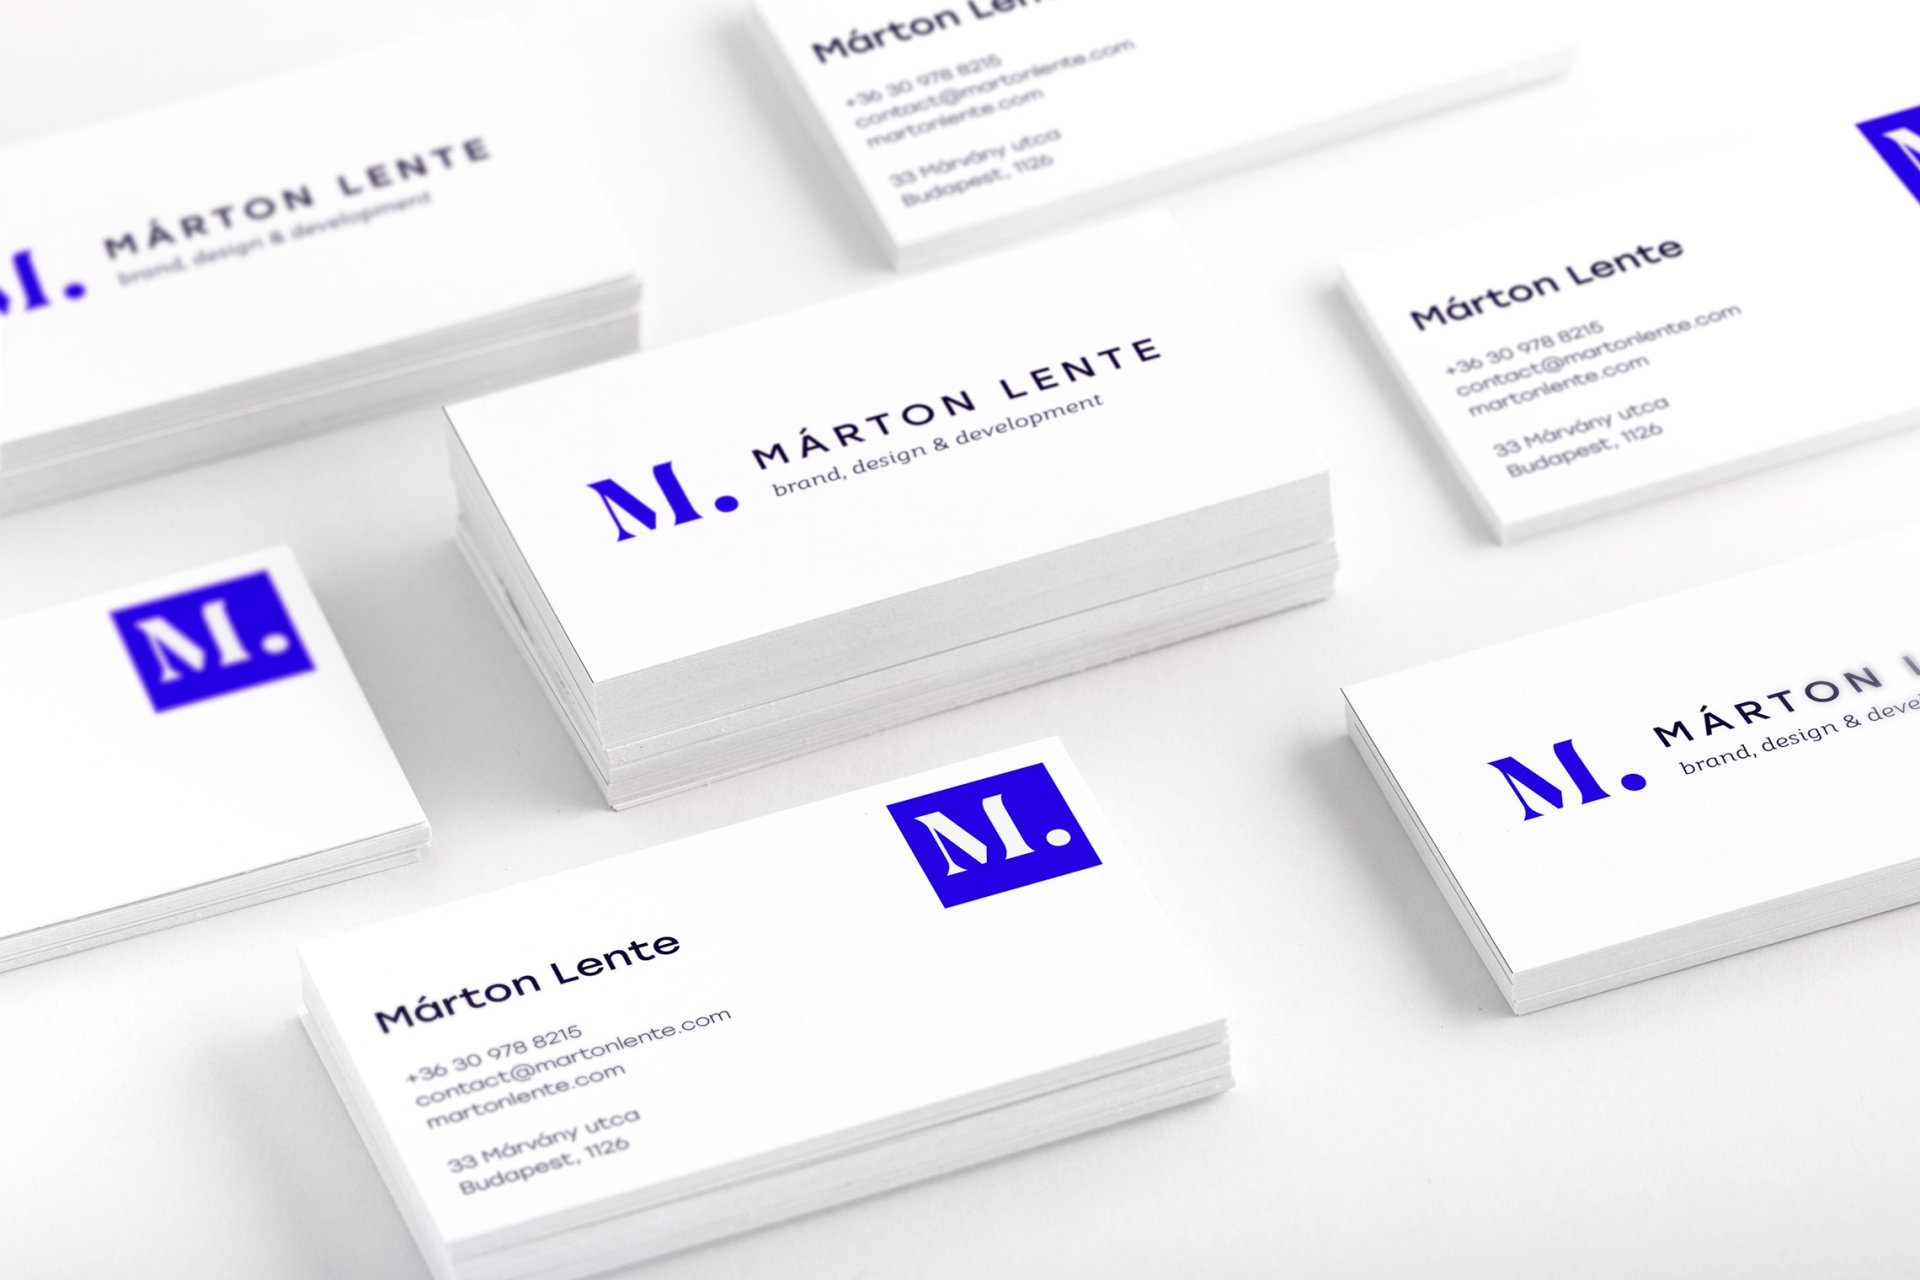 Márton Lente business card back and front design